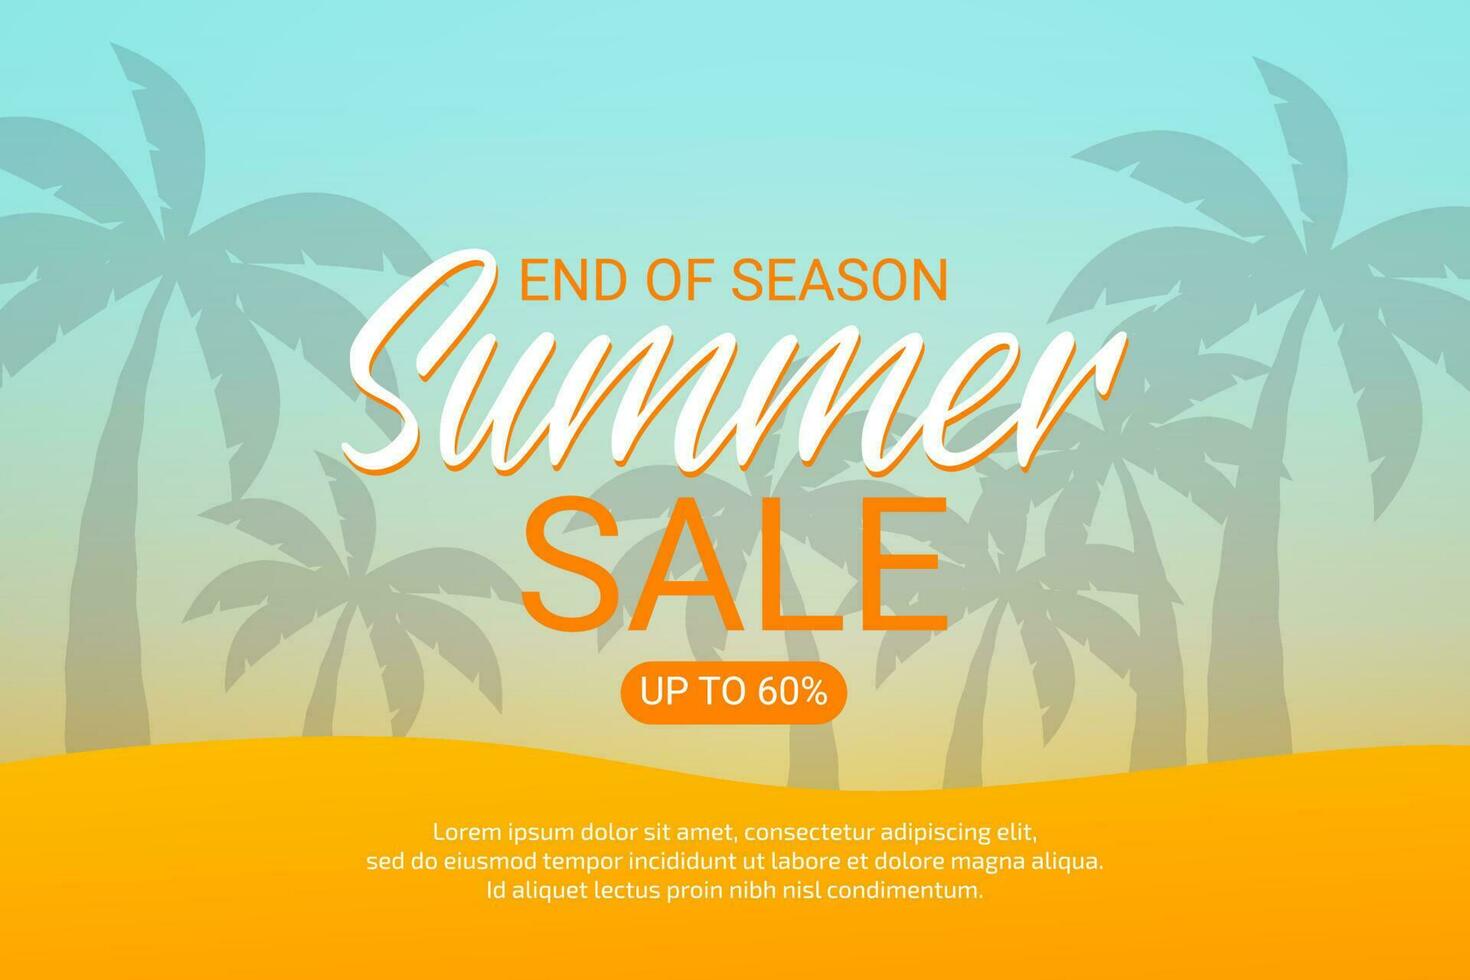 Sommer- Verkauf Vorlage Hintergrund mit tropisch Pflanzen vektor